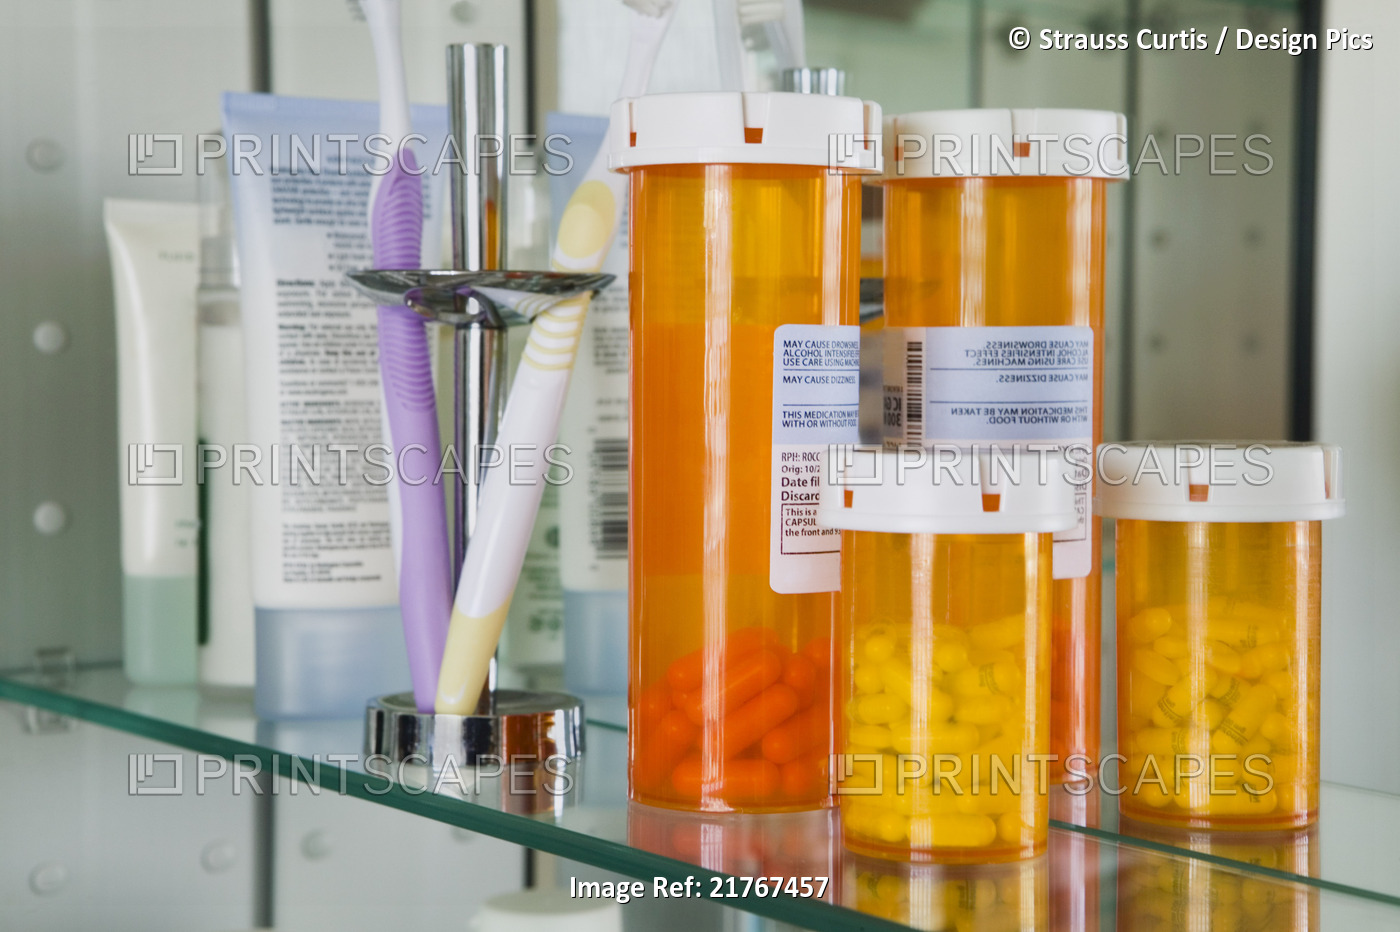 Pharmaceuticals in Medicine Cabinet